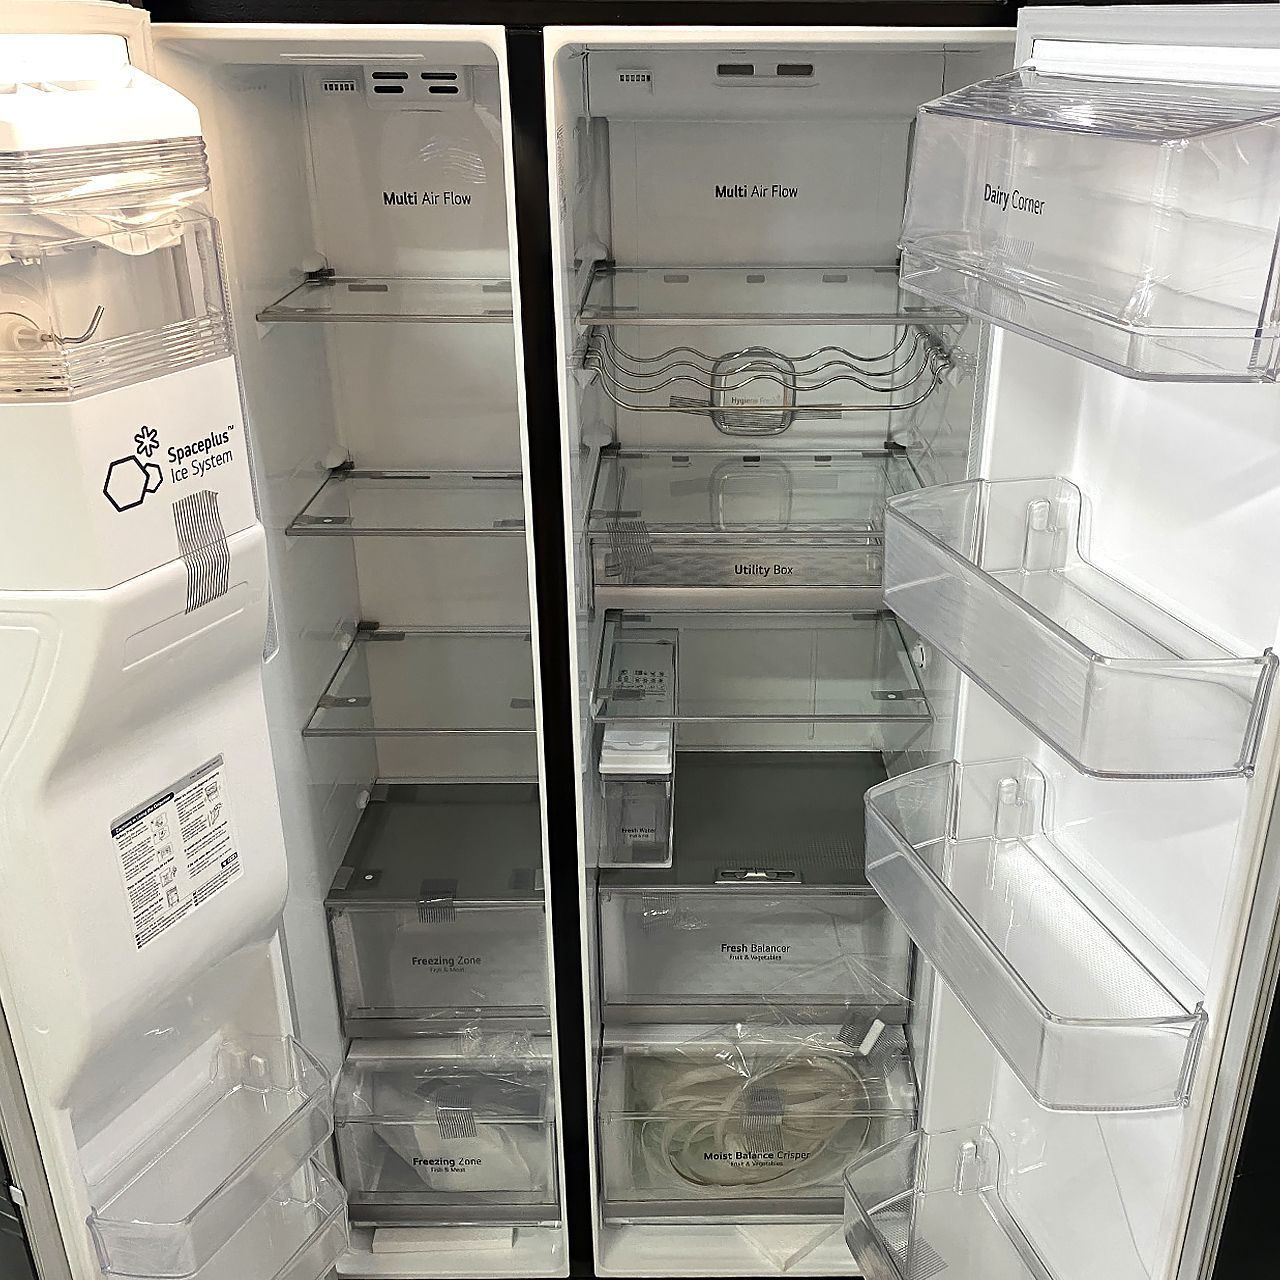 Холодильник side-by-side LG 626 литров